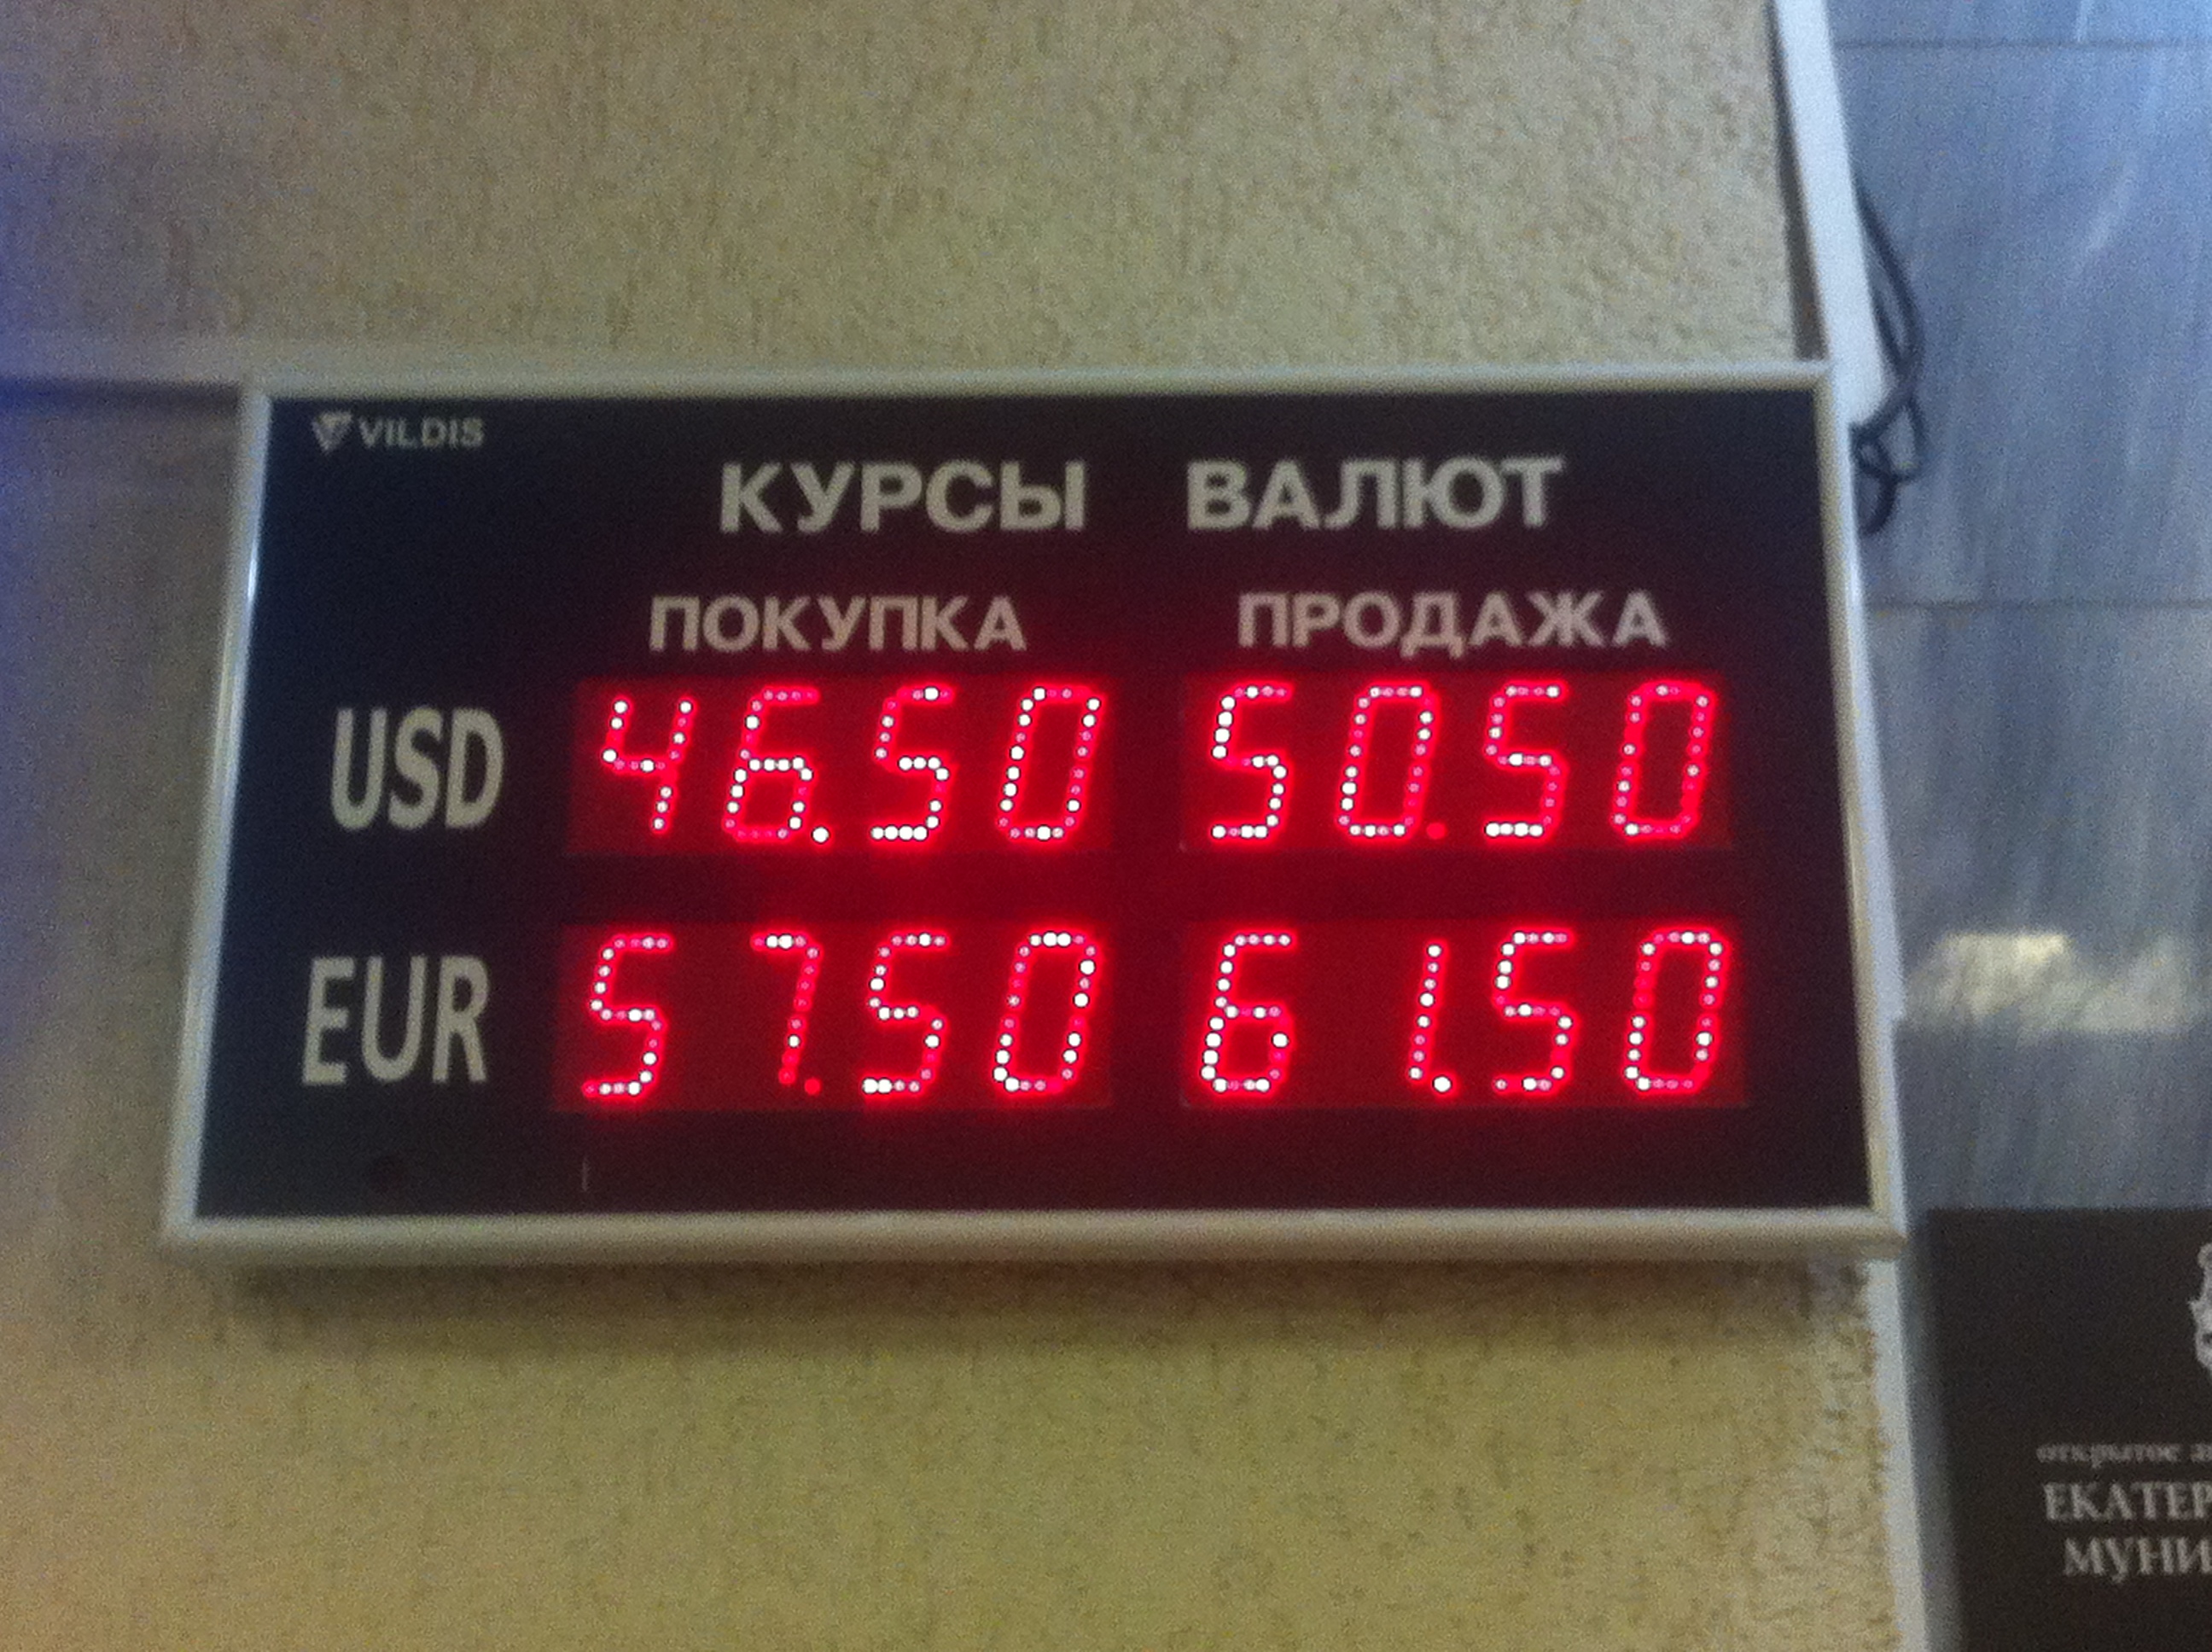 Продать доллар купить рубль. Курсы валют. Покупка продажа валюты. Курс валют фото. Купля продажа валюты.